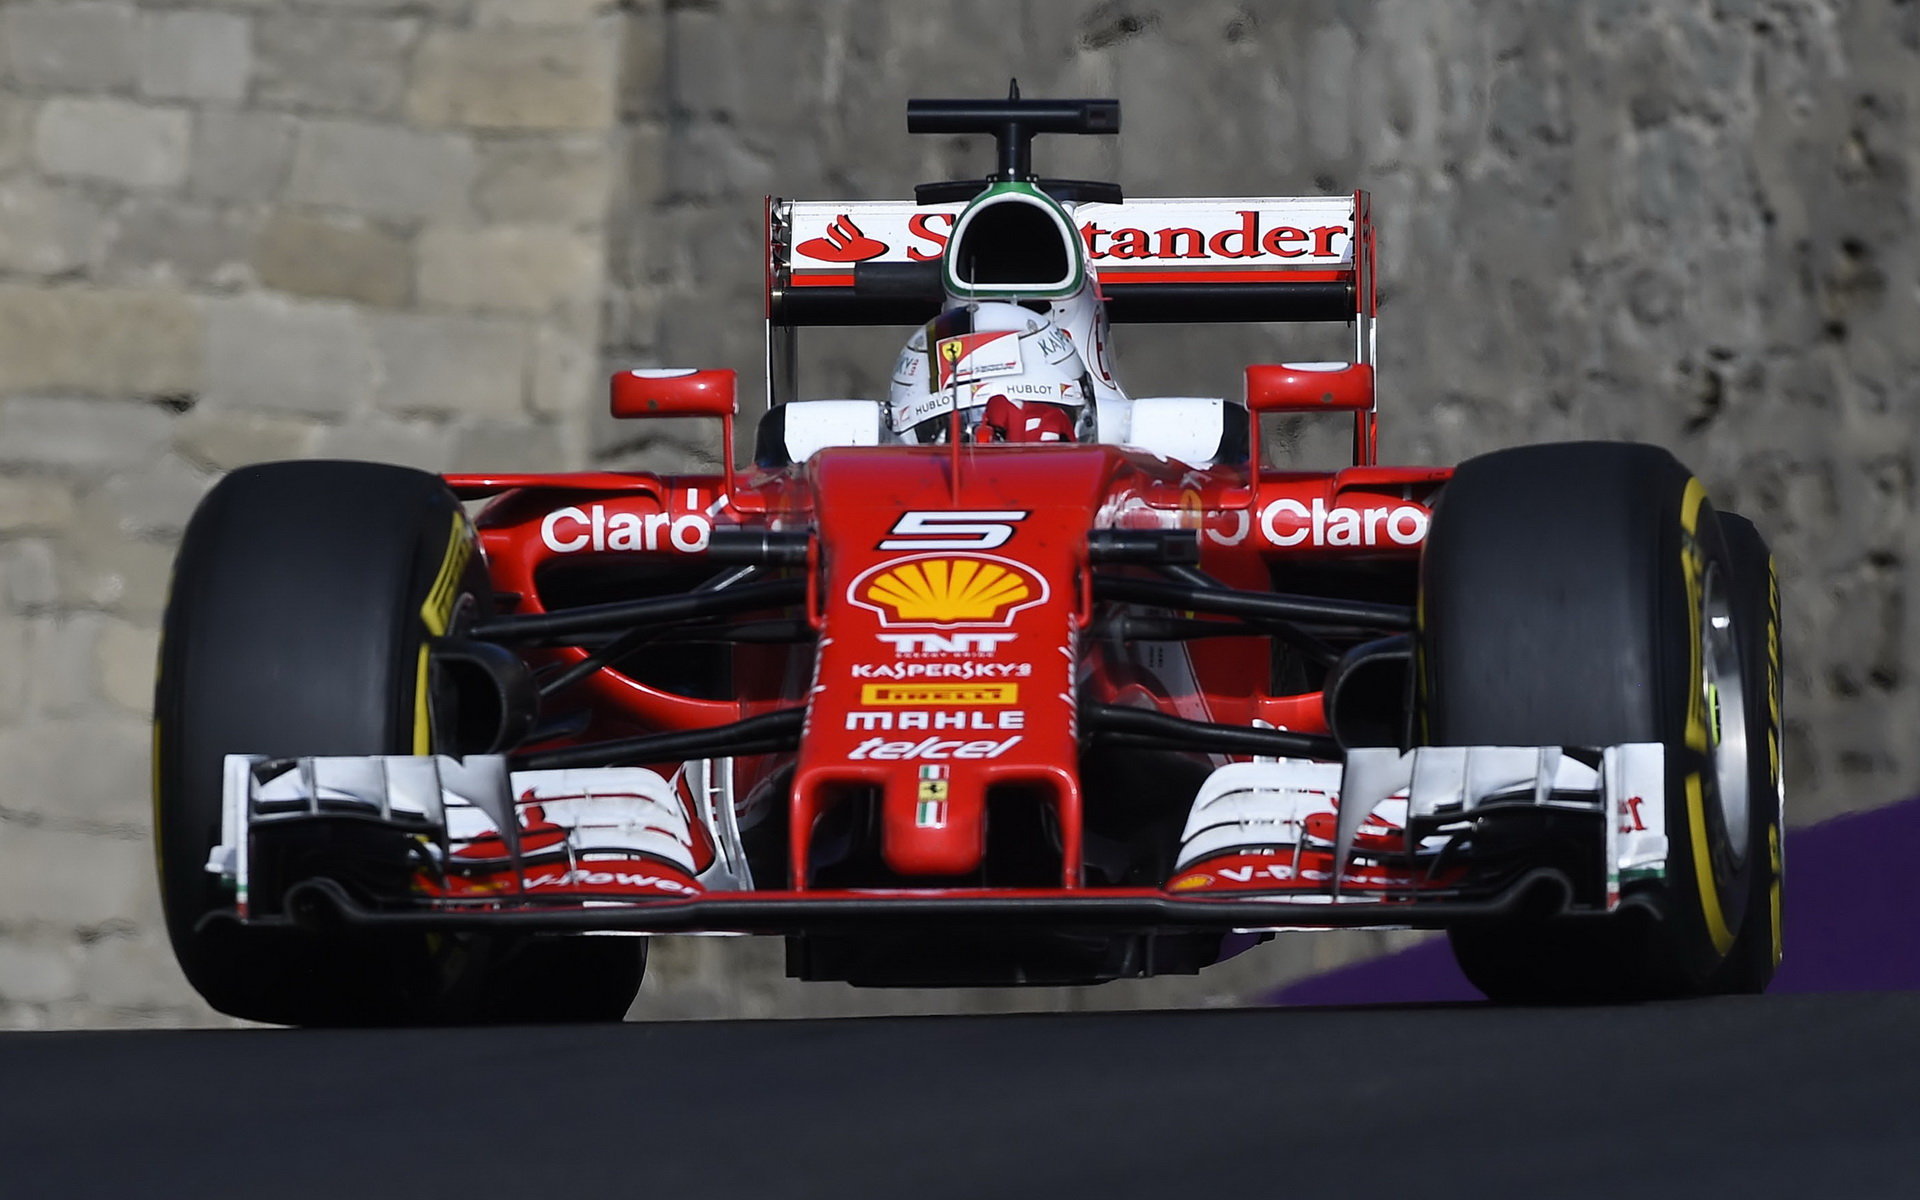 Sebastian Vettel v Baku